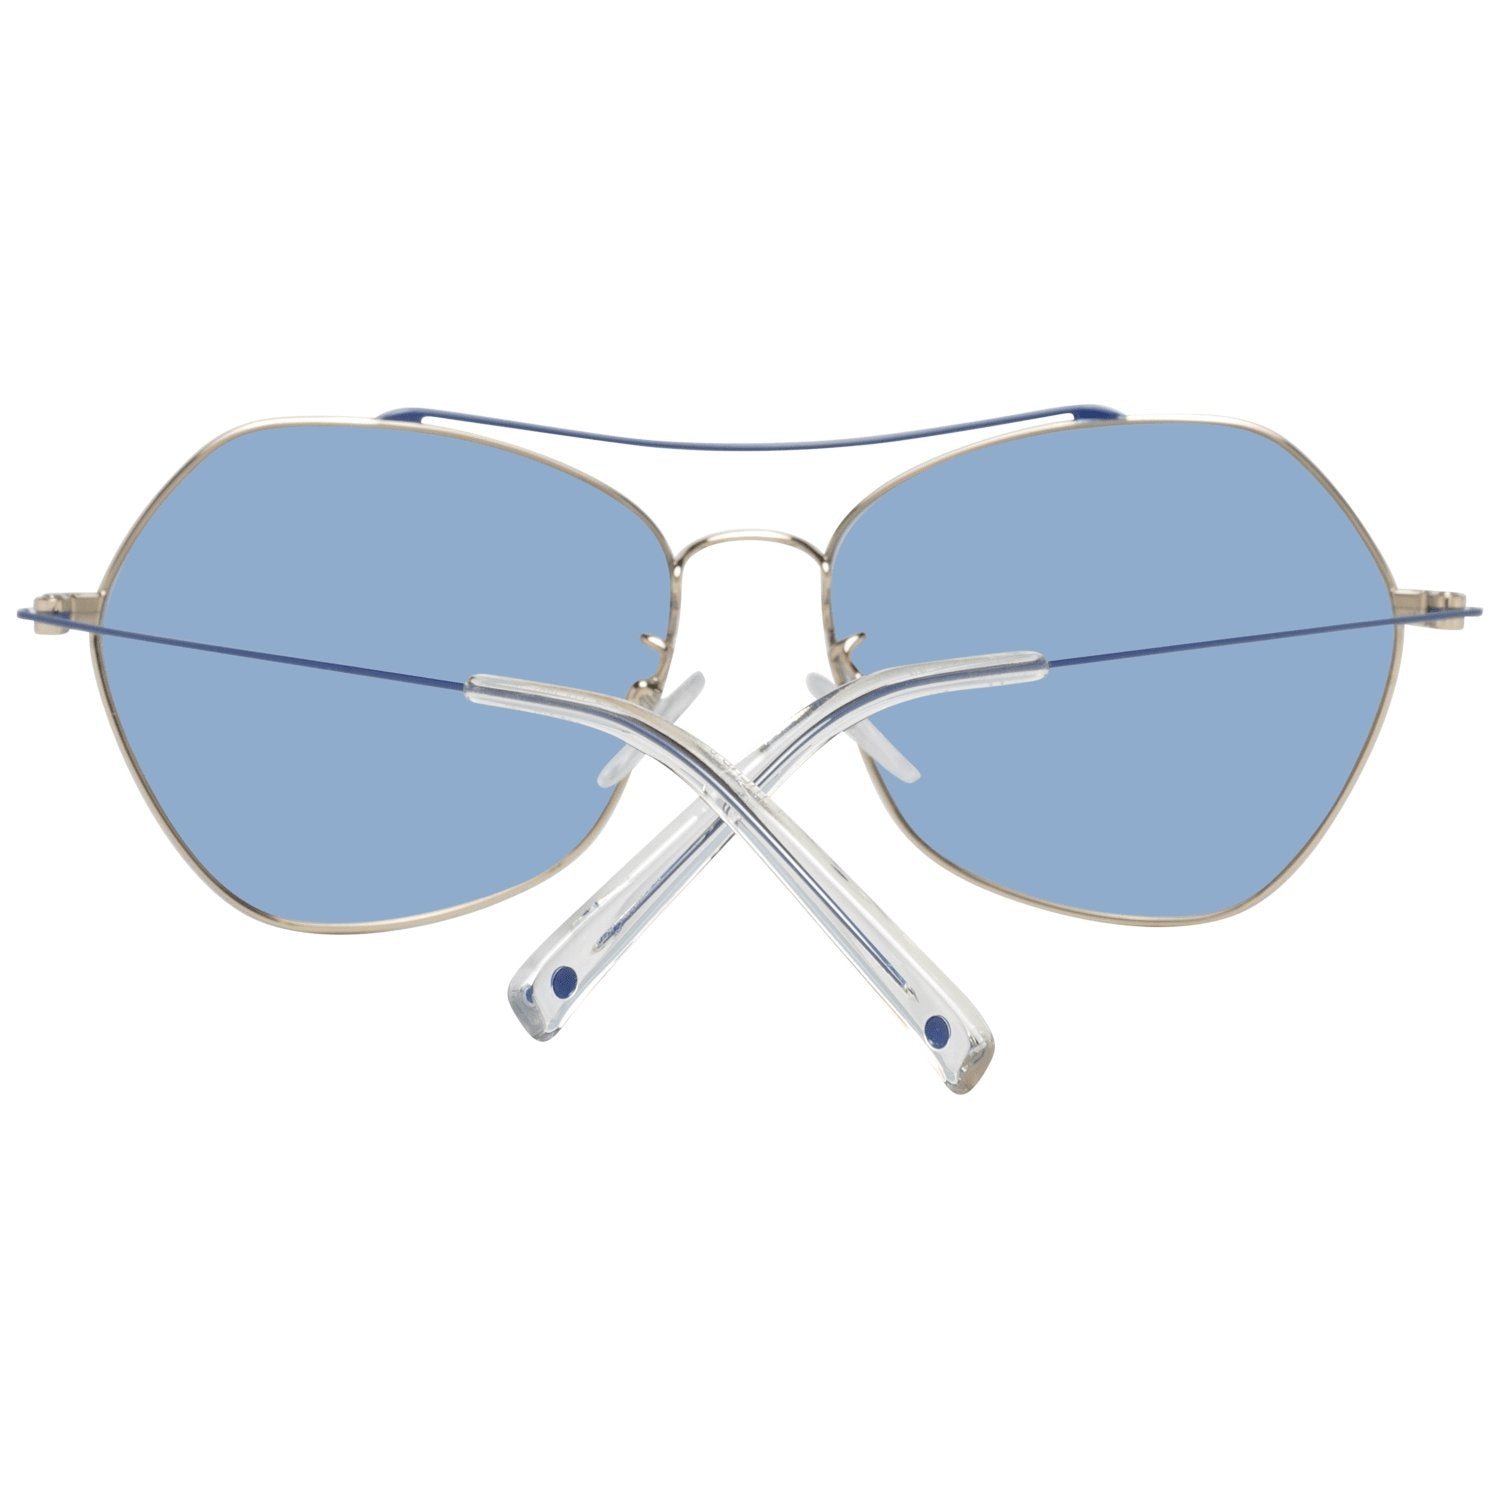 Sting Multicolor Sunglasses for Woman - Fizigo